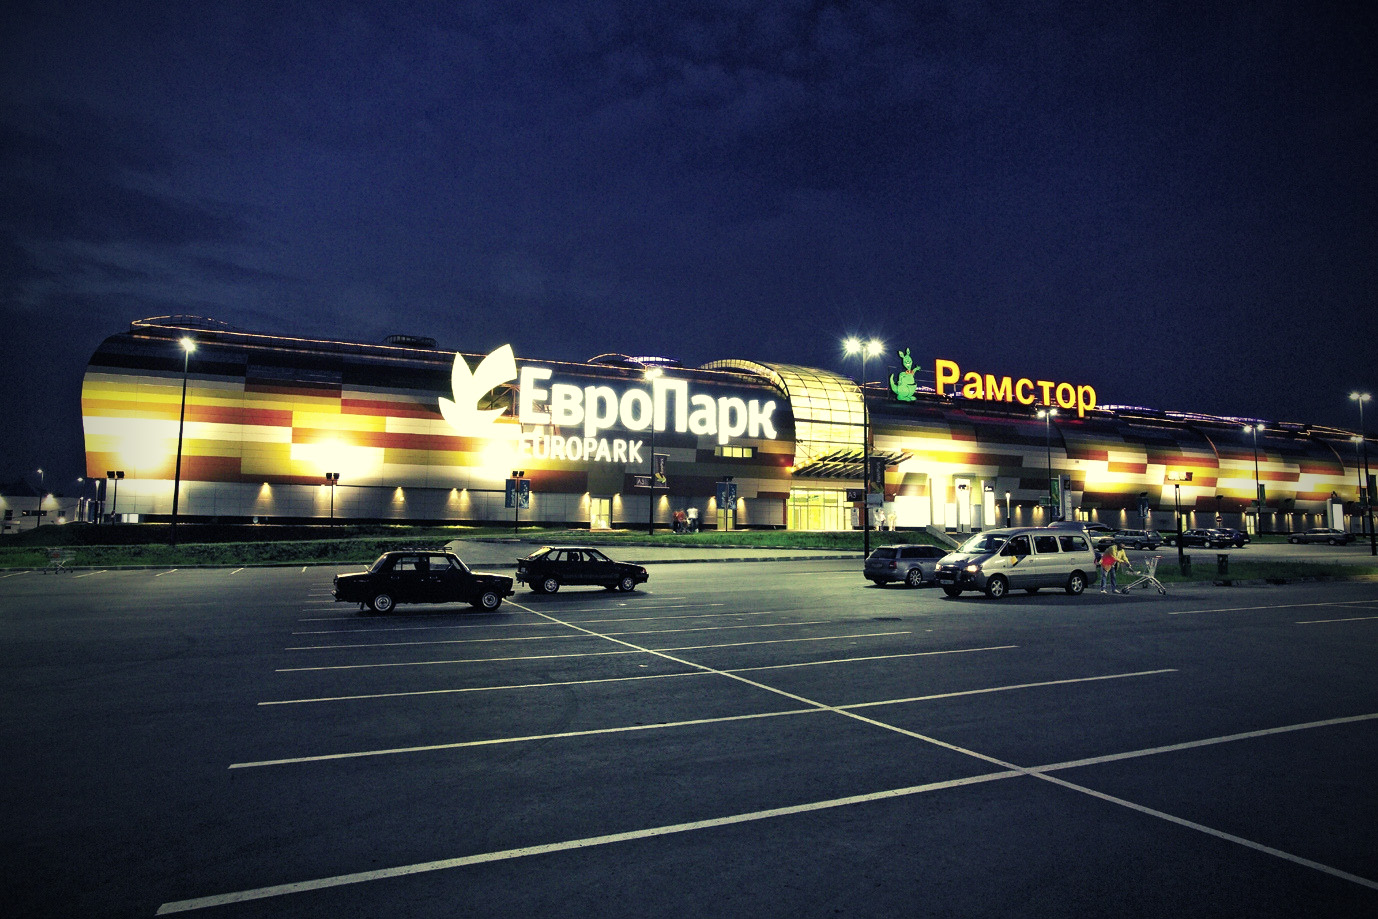 Europark Shopping Center